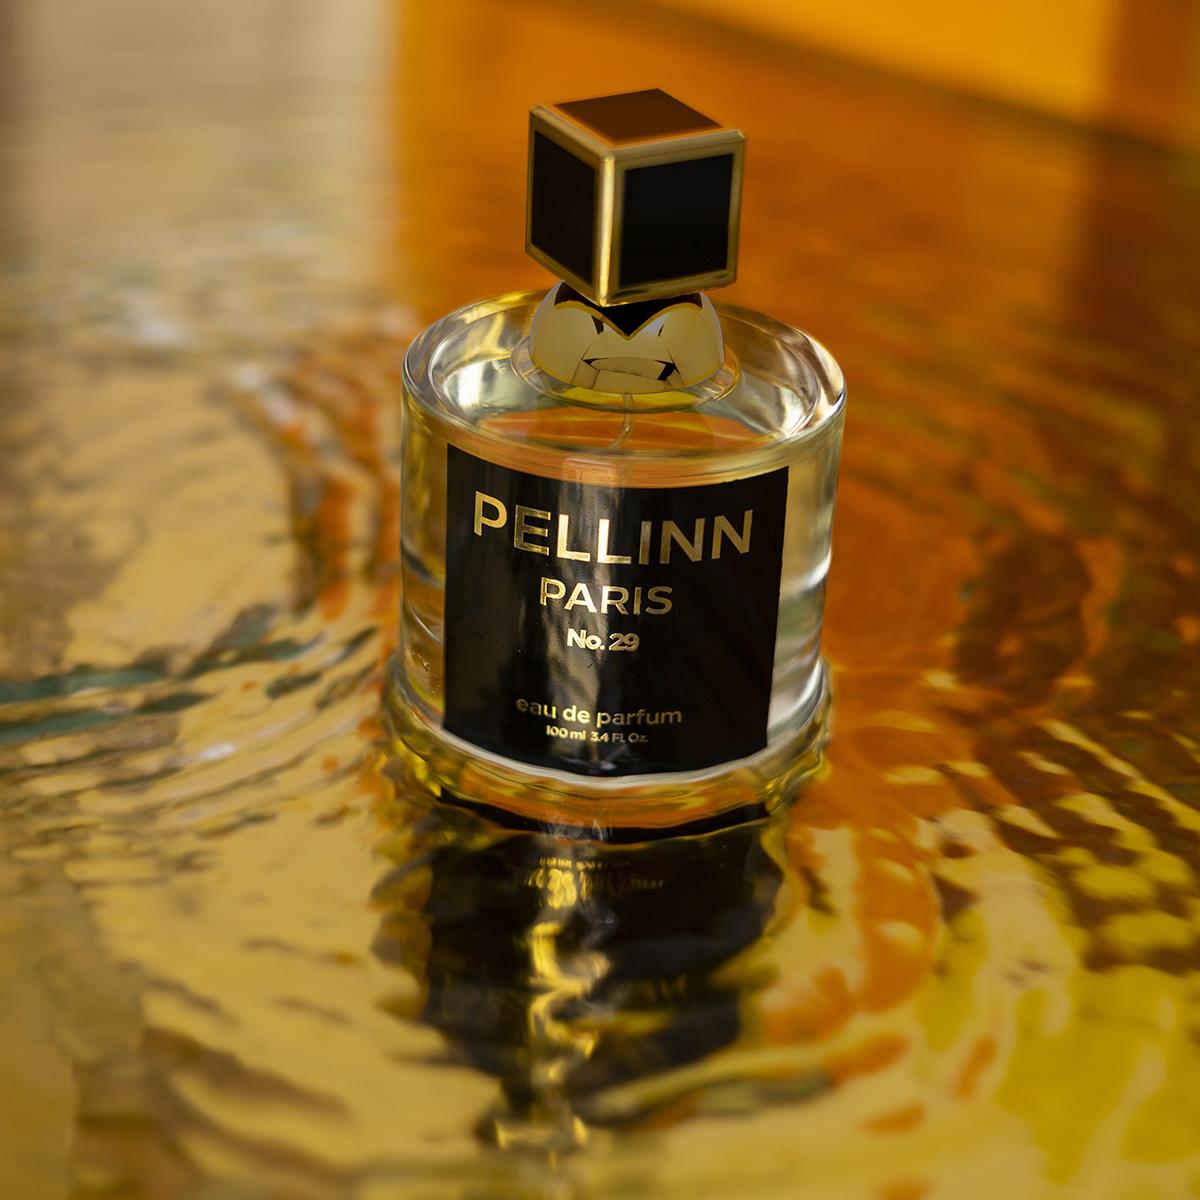 Pellinn Paris No.29 Çiçeksi Kadın EDP Parfüm 100 ml  Pellinn Paris Parfüm